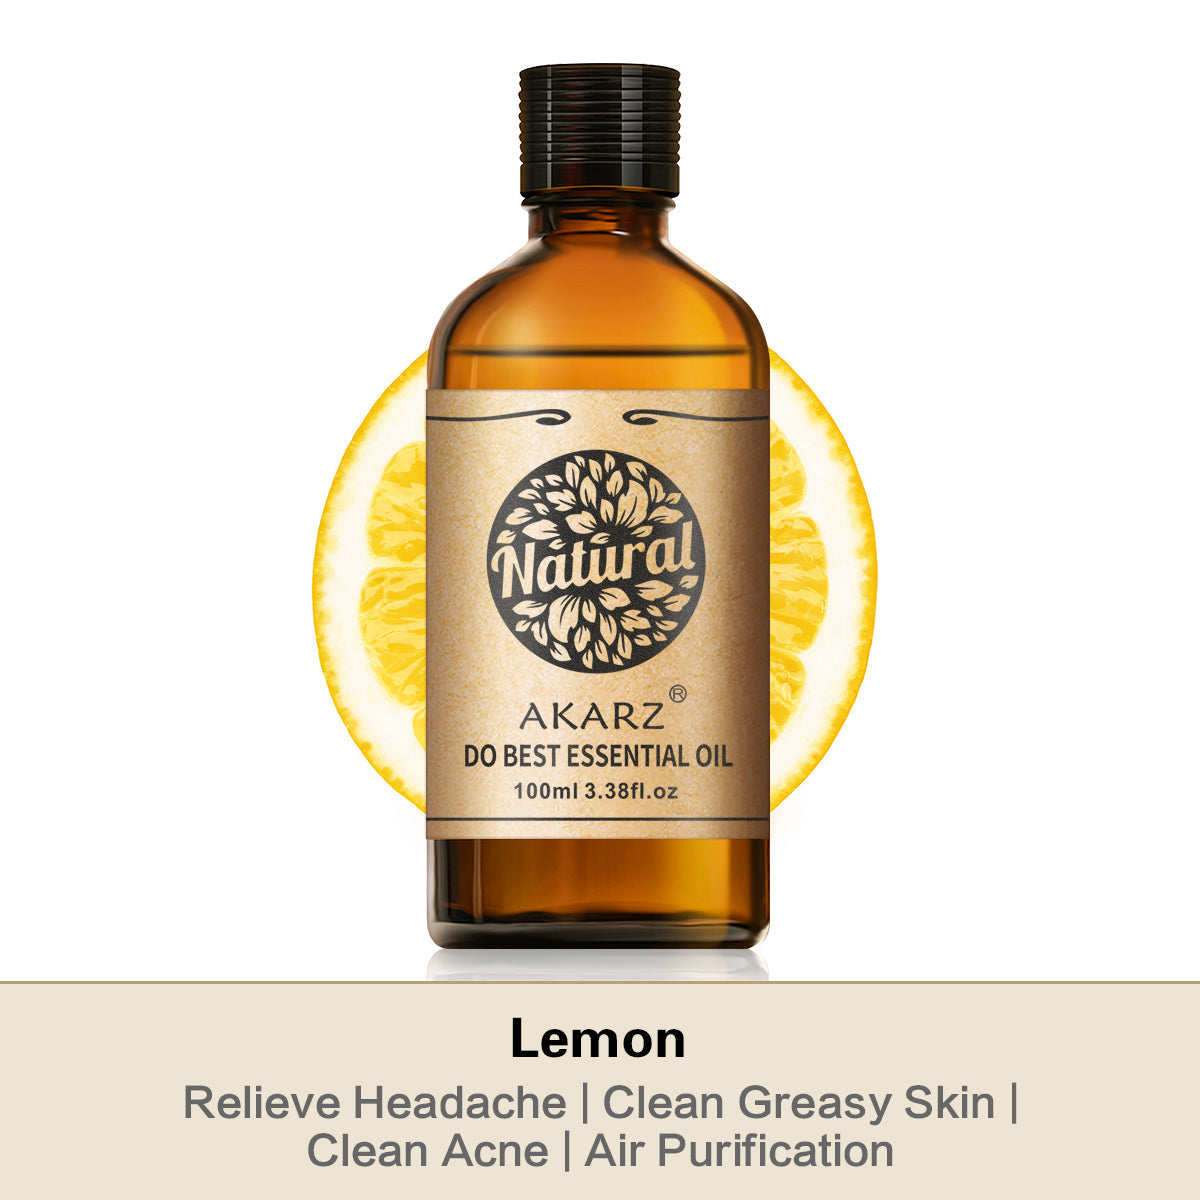 Skin Whitening Body Care Lemongrass Oil Essential Oil - China